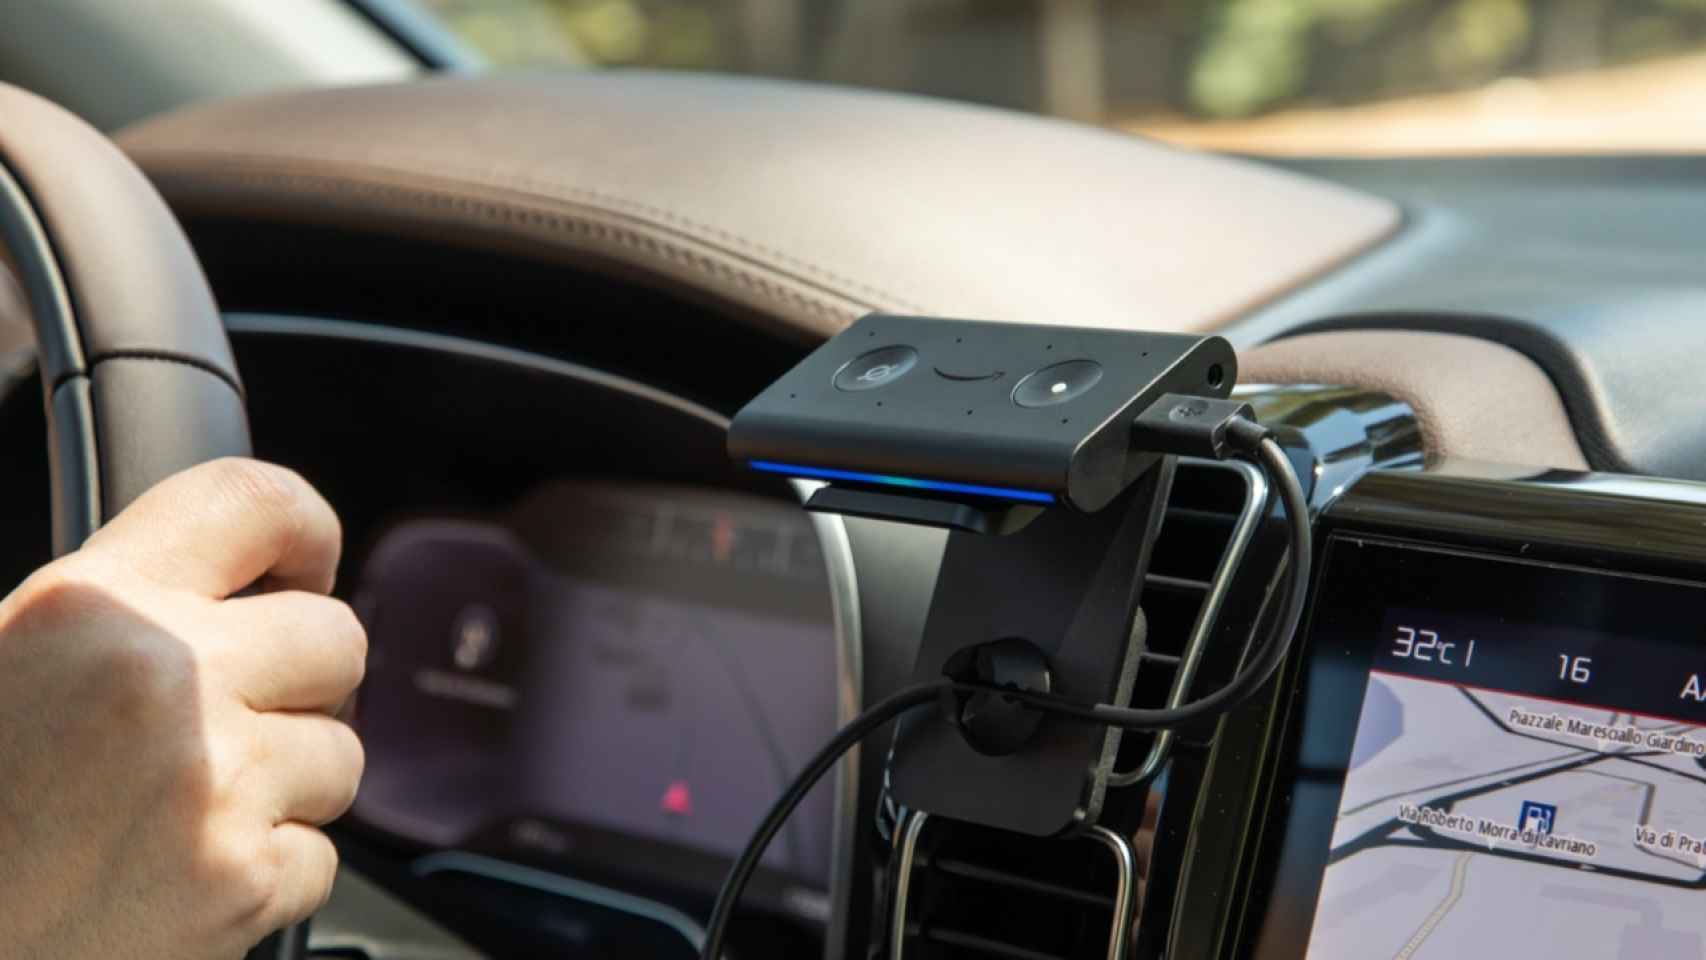 Echo Auto, el Alexa para coches que quiere 'controlarlo' todo